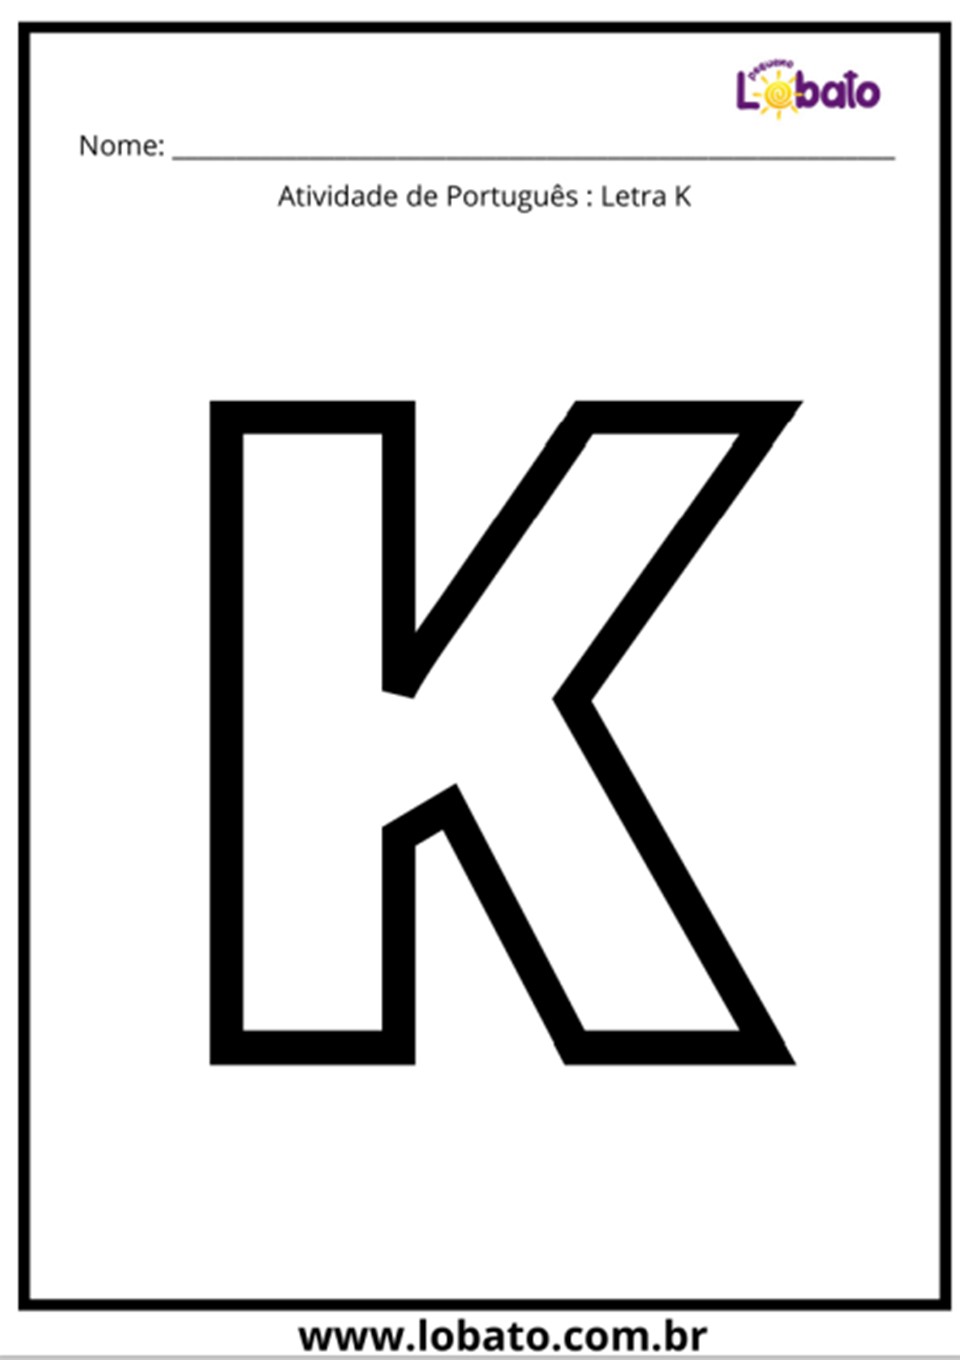 Atividade de português com a letra k para imprimir